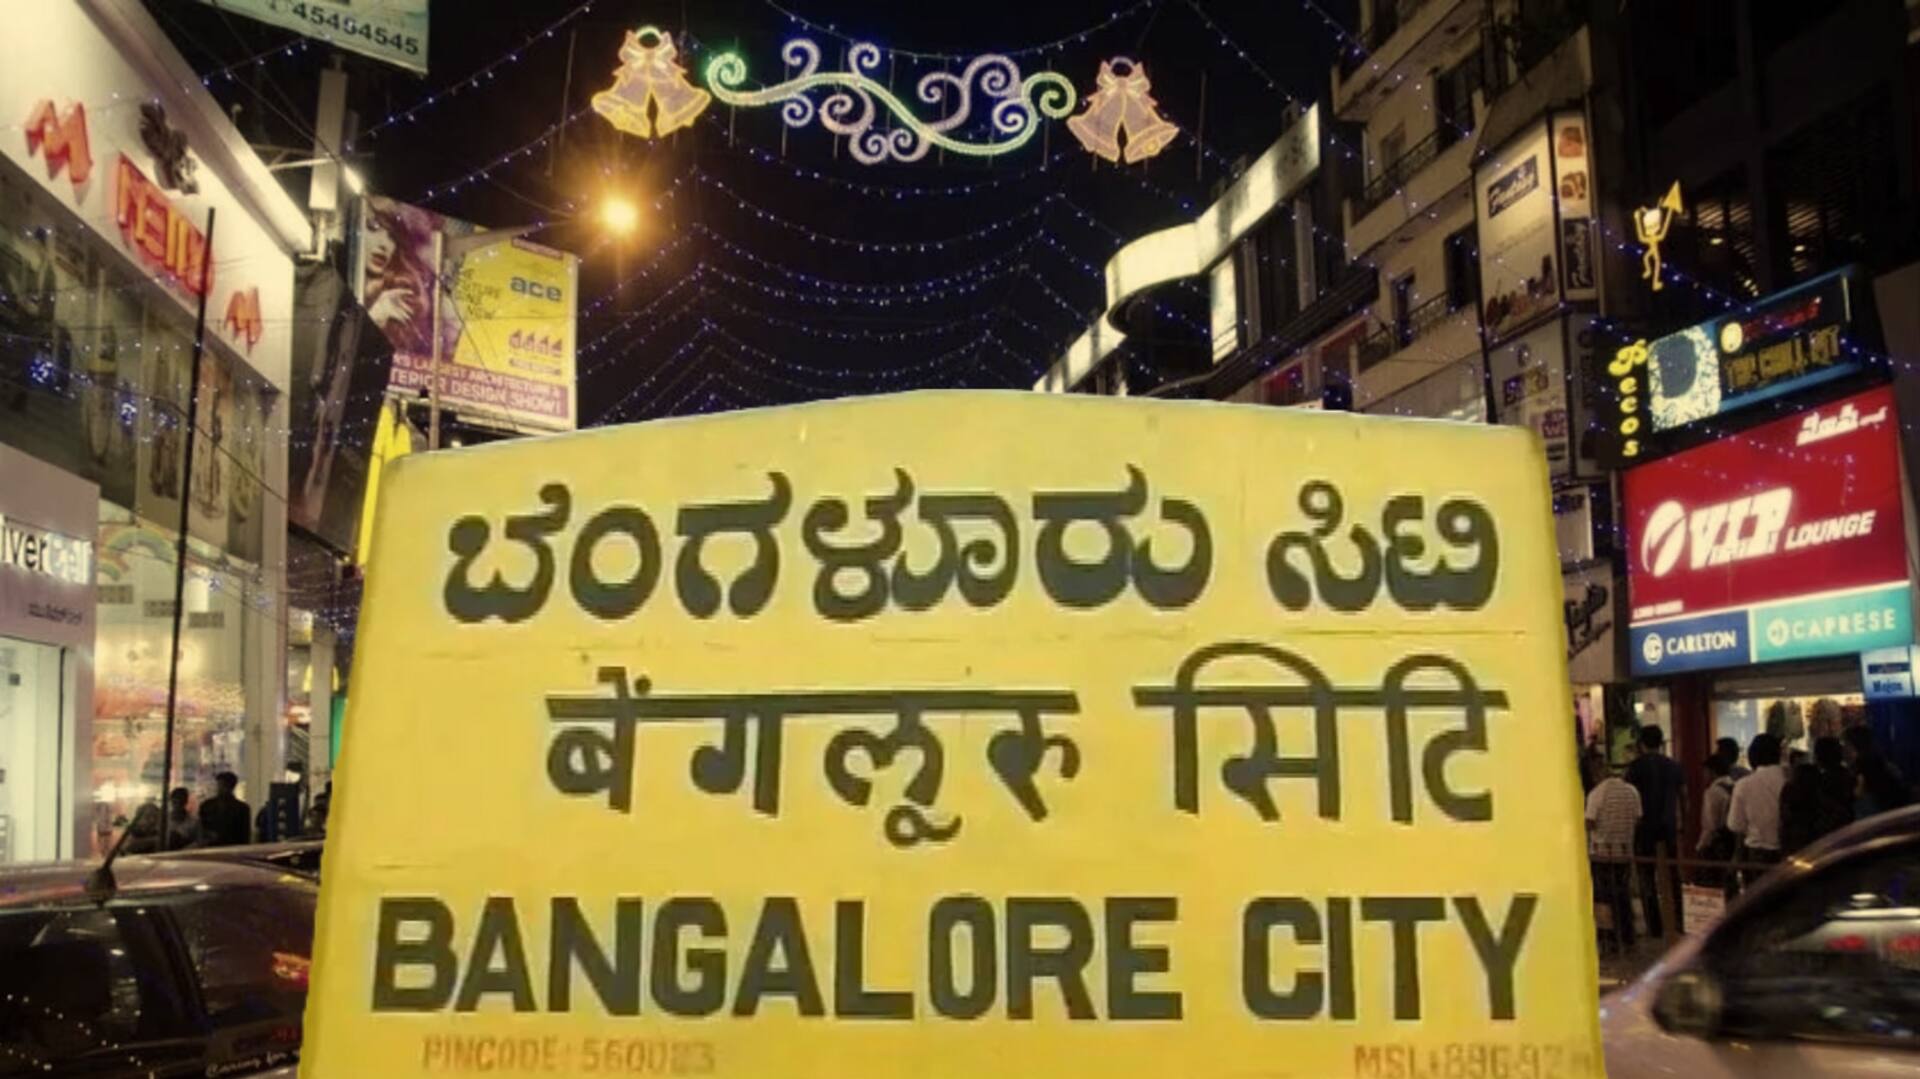 बेंगलुरु: दुकानों पर कन्नड़ भाषा में साइनबोर्ड लगाने के मामले पर शुरू हुआ विवाद 